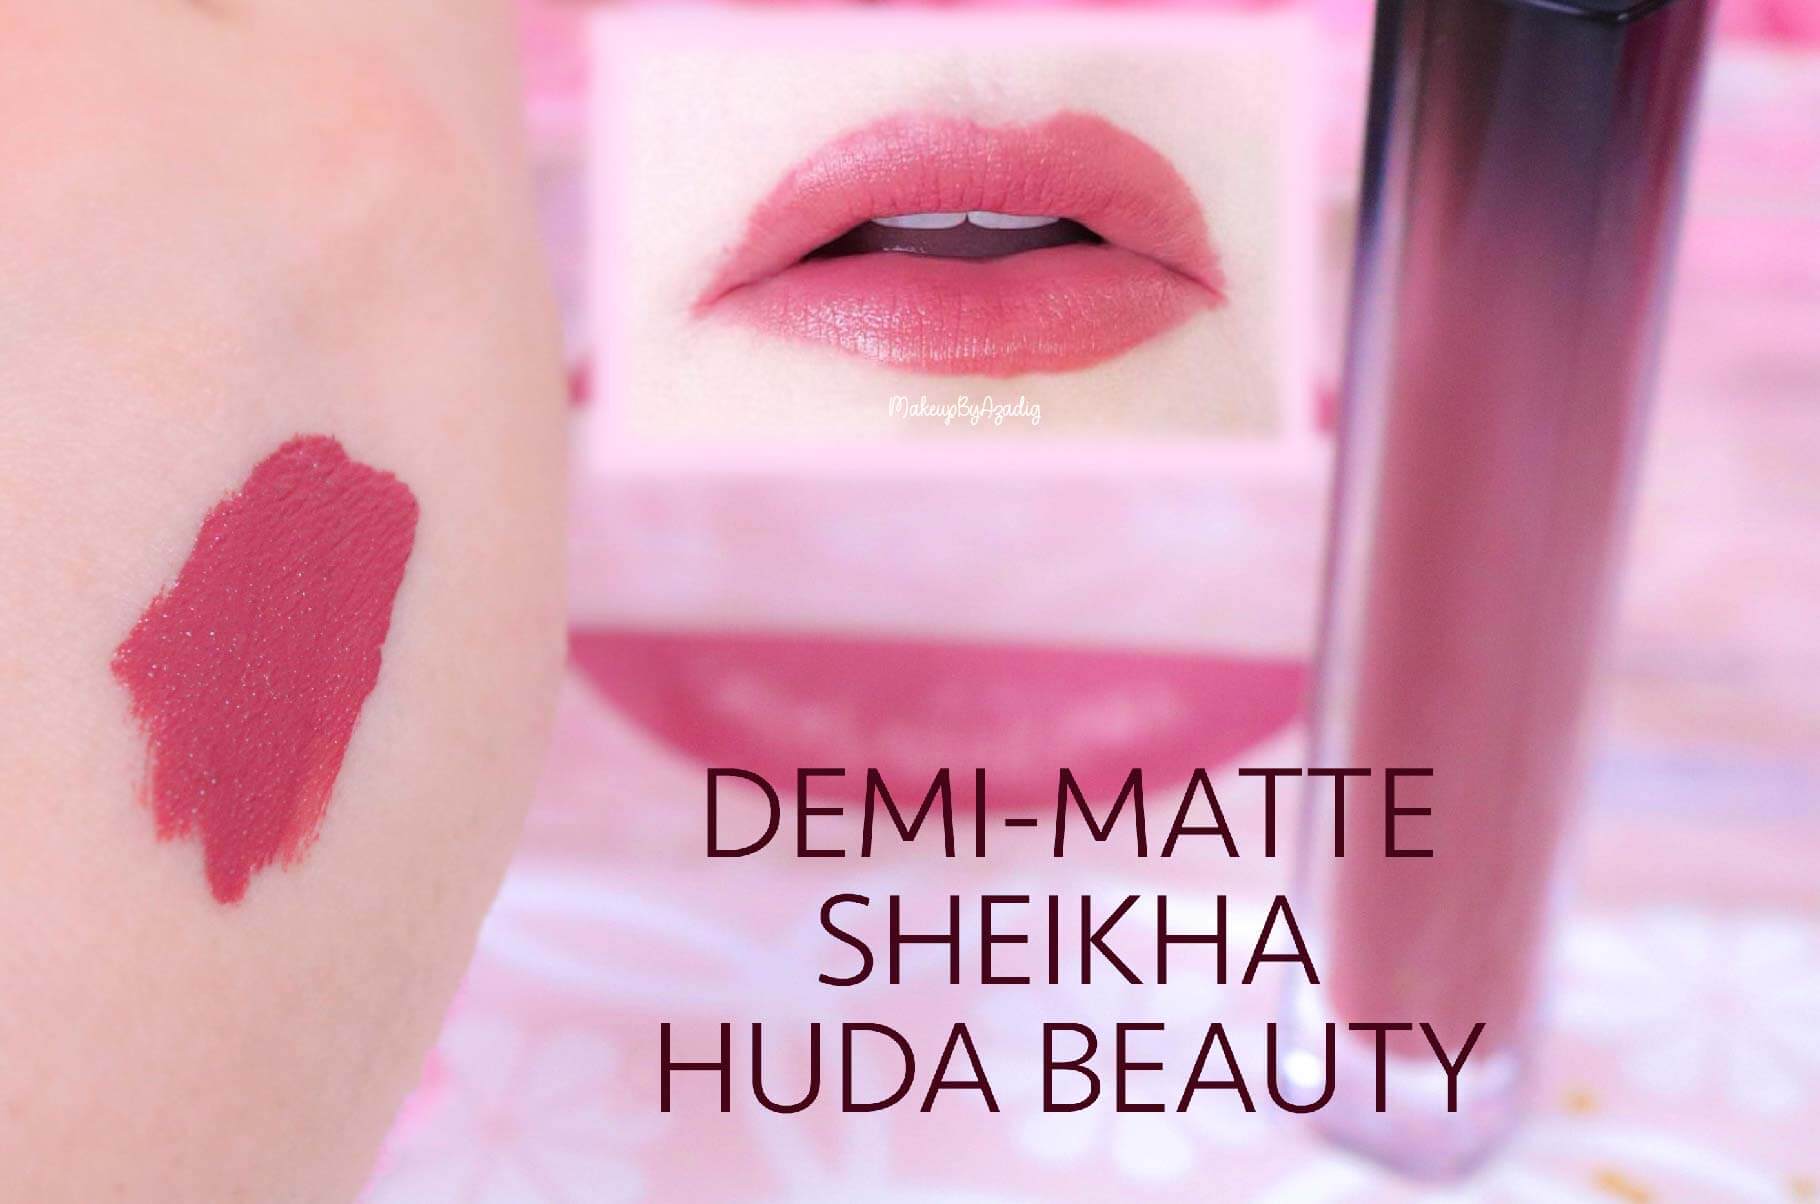 revue-marque-huda-beauty-rouge-a-levres-demi-matte-coffret-avis-prix-sheikha-makeupbyazadig-swatch-2